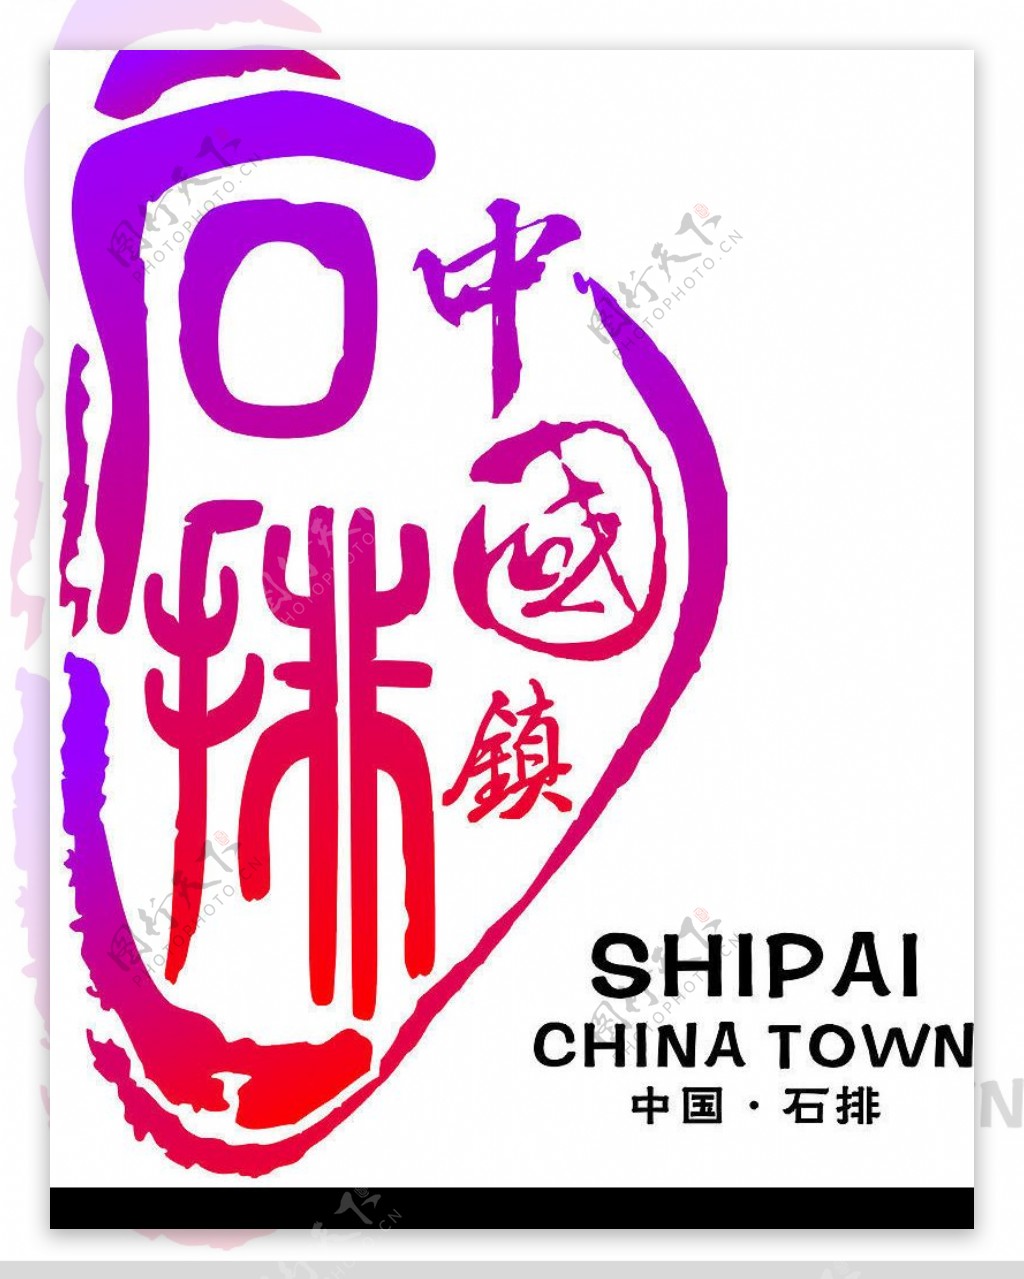 石排中国镇标志图片